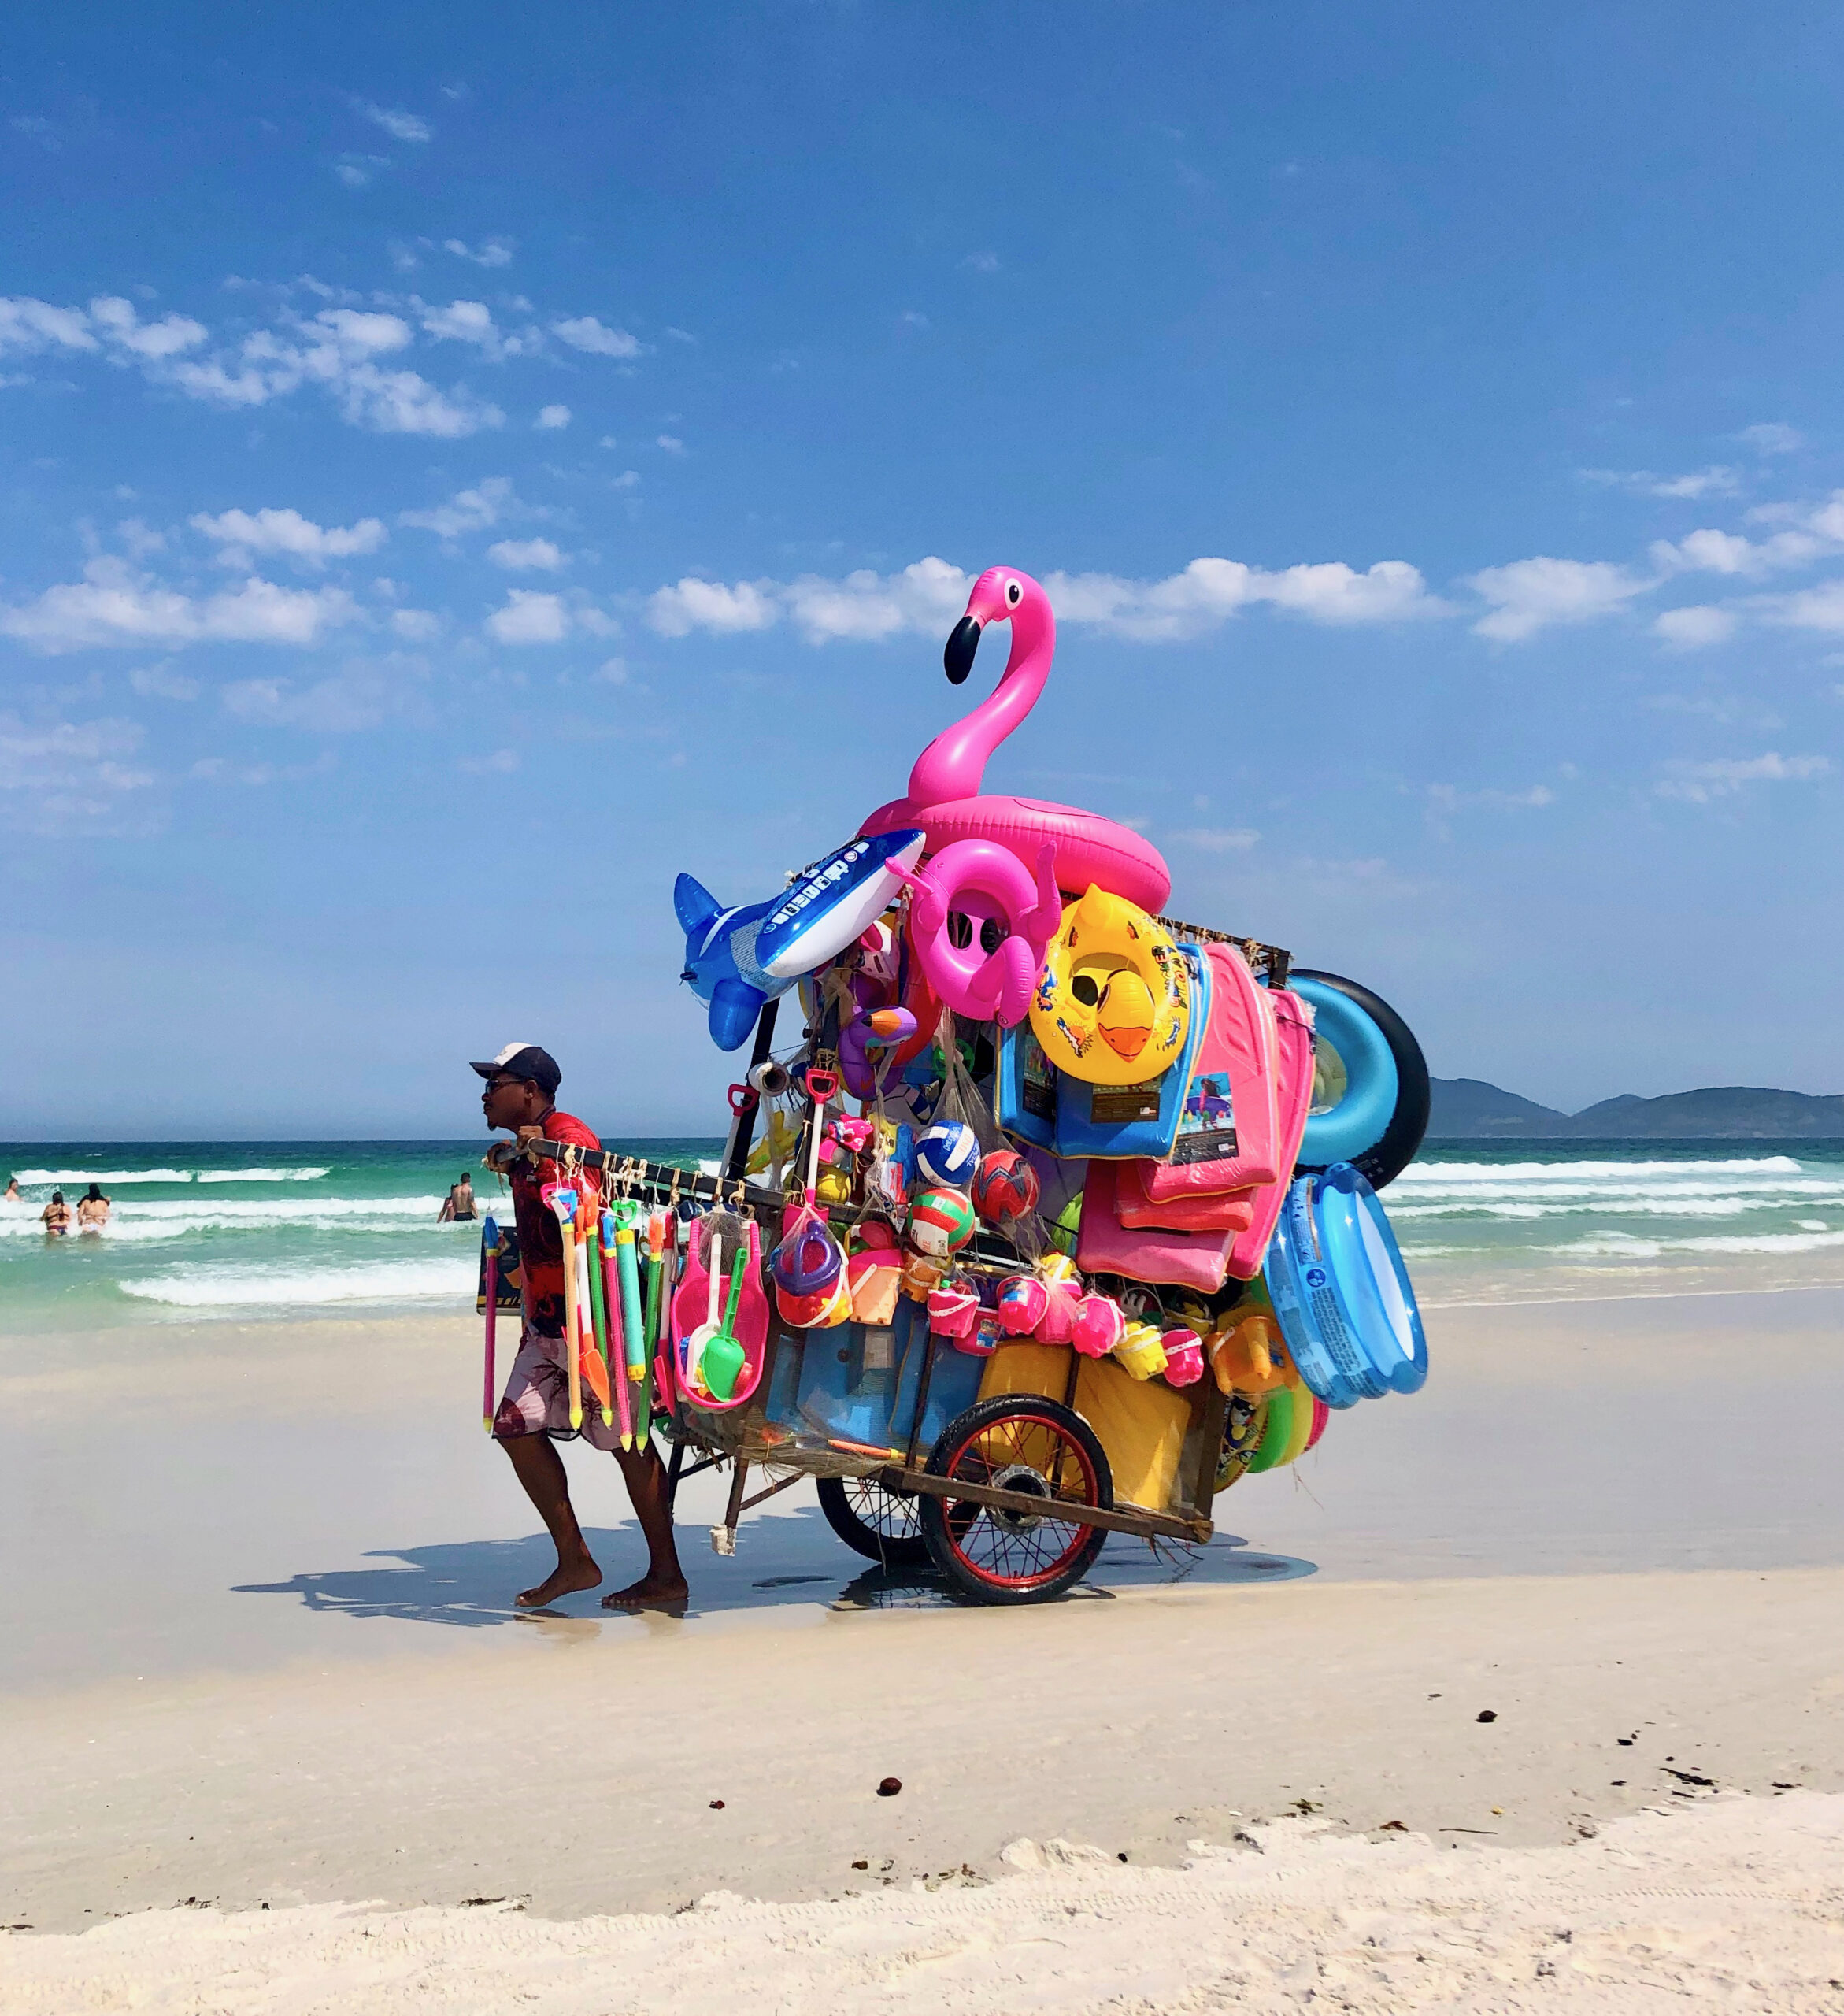 Brésil-Brasil-Brazil-Praia-das-dunas-Cabo-Frio-État-de-Rio-Janeiro-vendedor-vendeur d'articles de plage